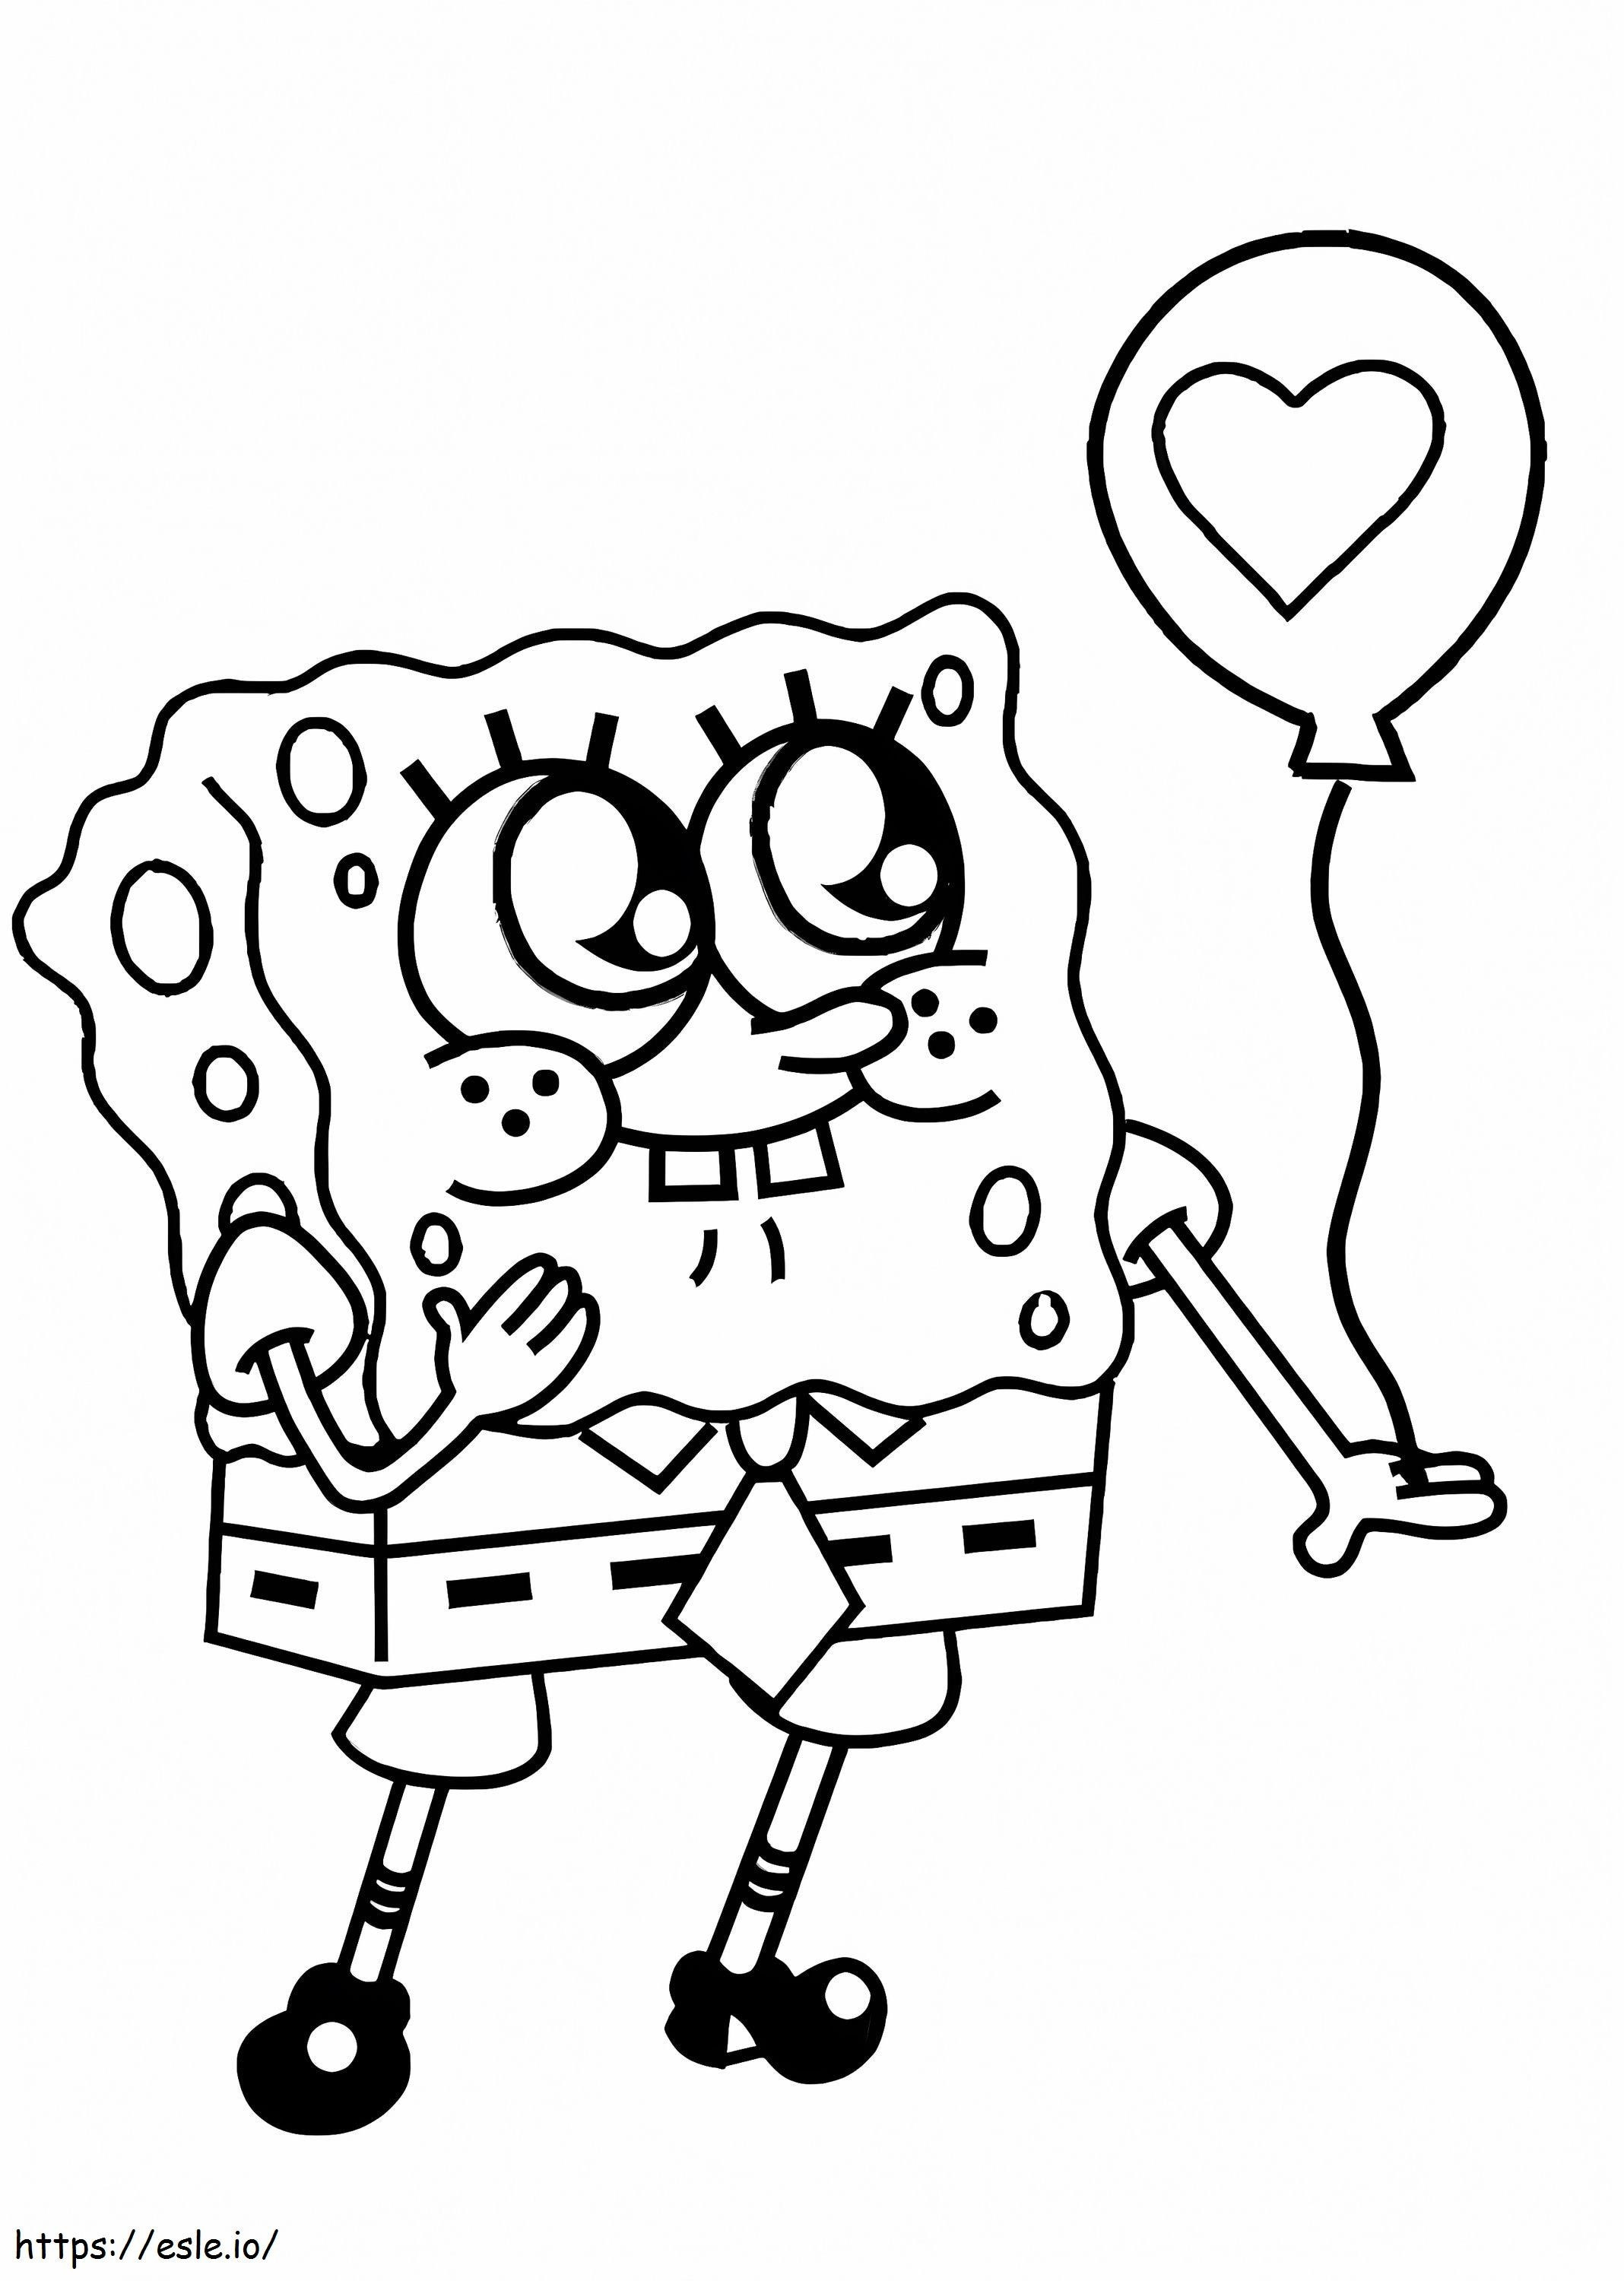 Adorable SpongeBob coloring page